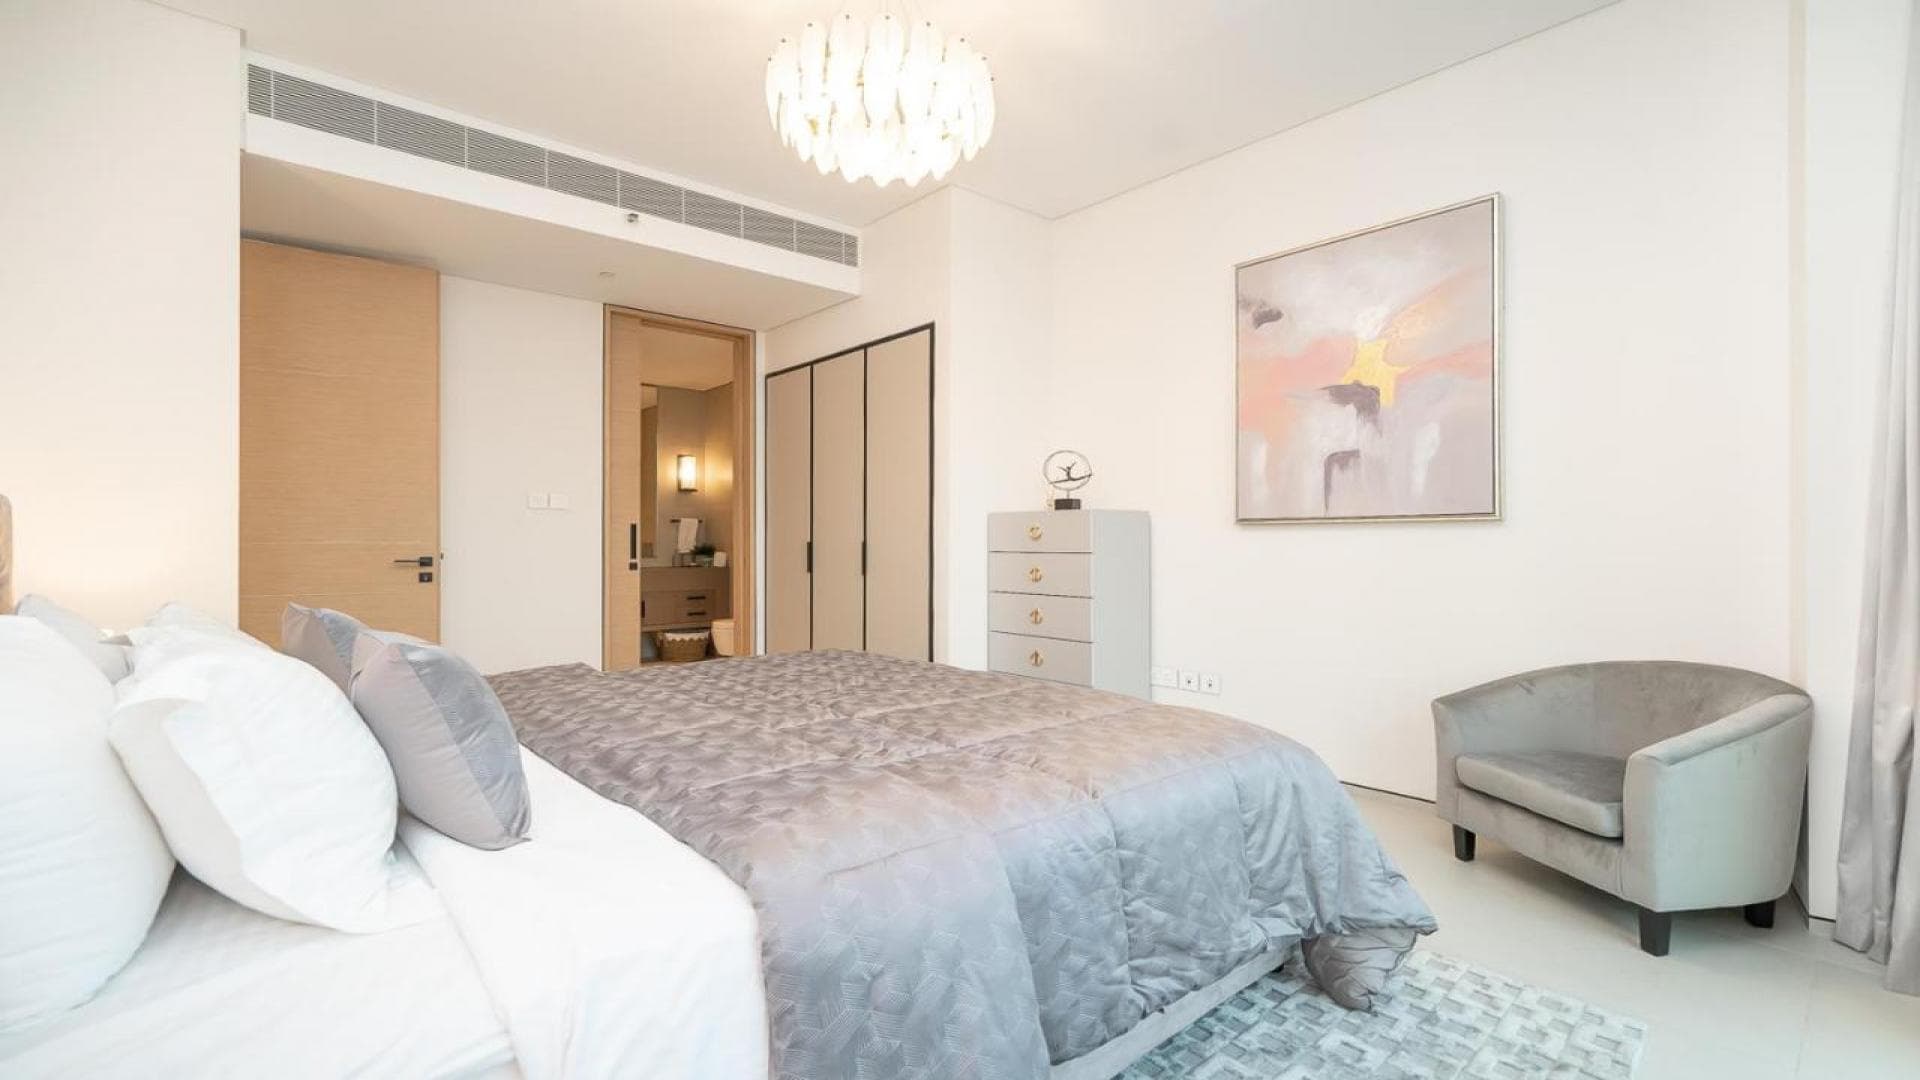 1 Bedroom Apartment For Rent Block C Lp38928 30daea07c47c3a00.jpg